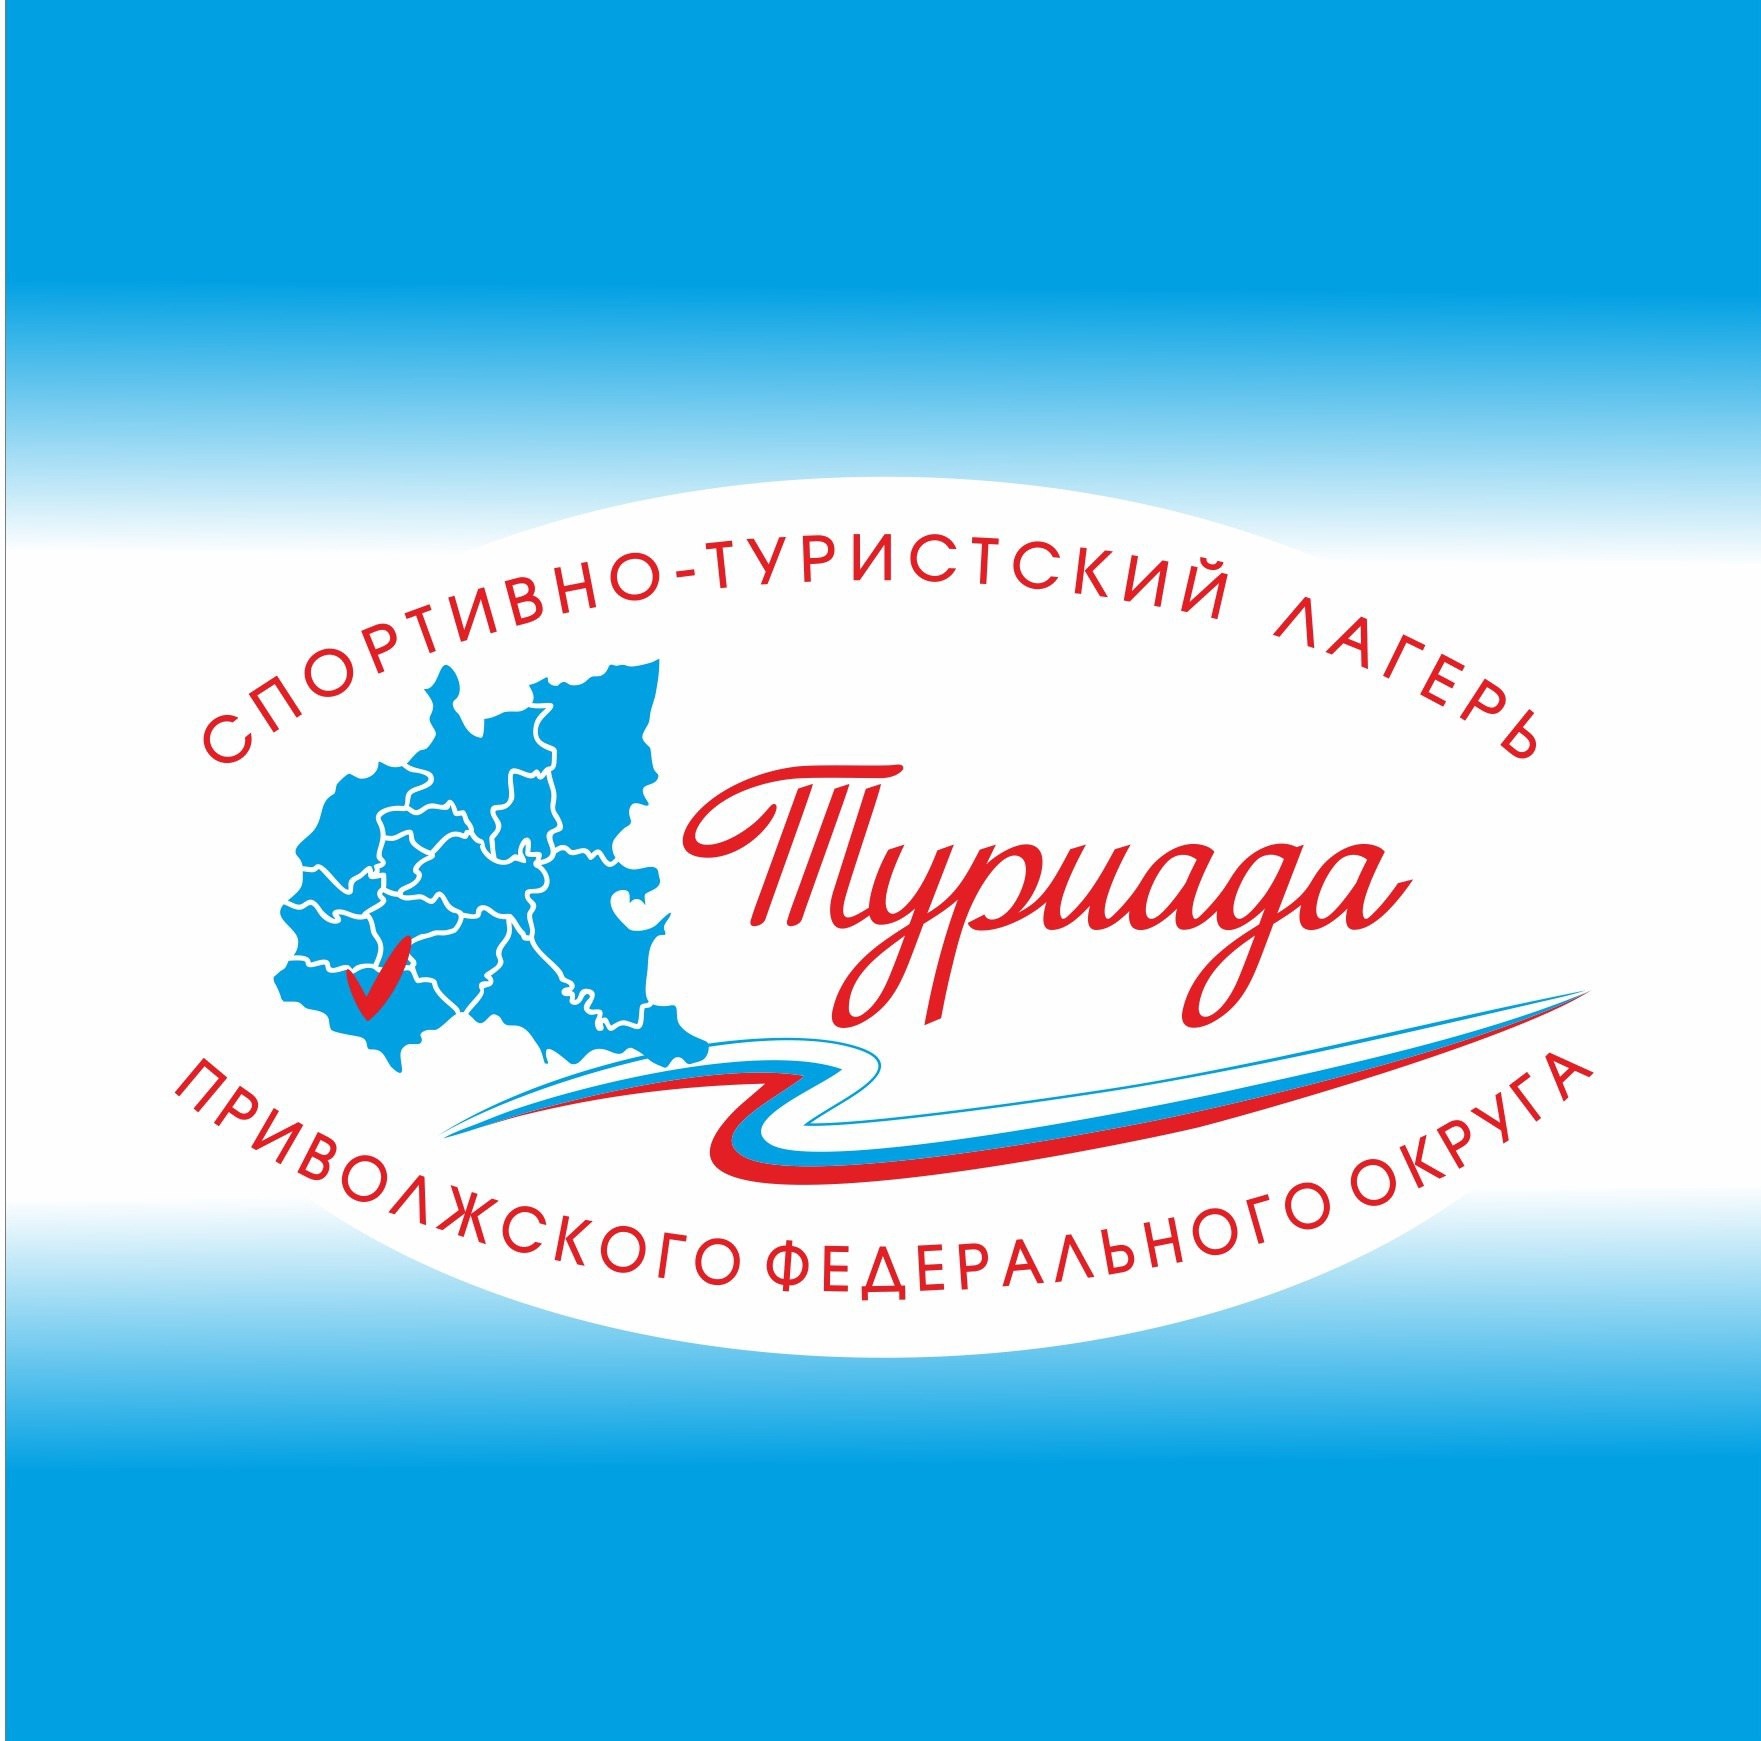 43 участника представят Кировскую область на спортивно-туристском лагере «Туриада» .